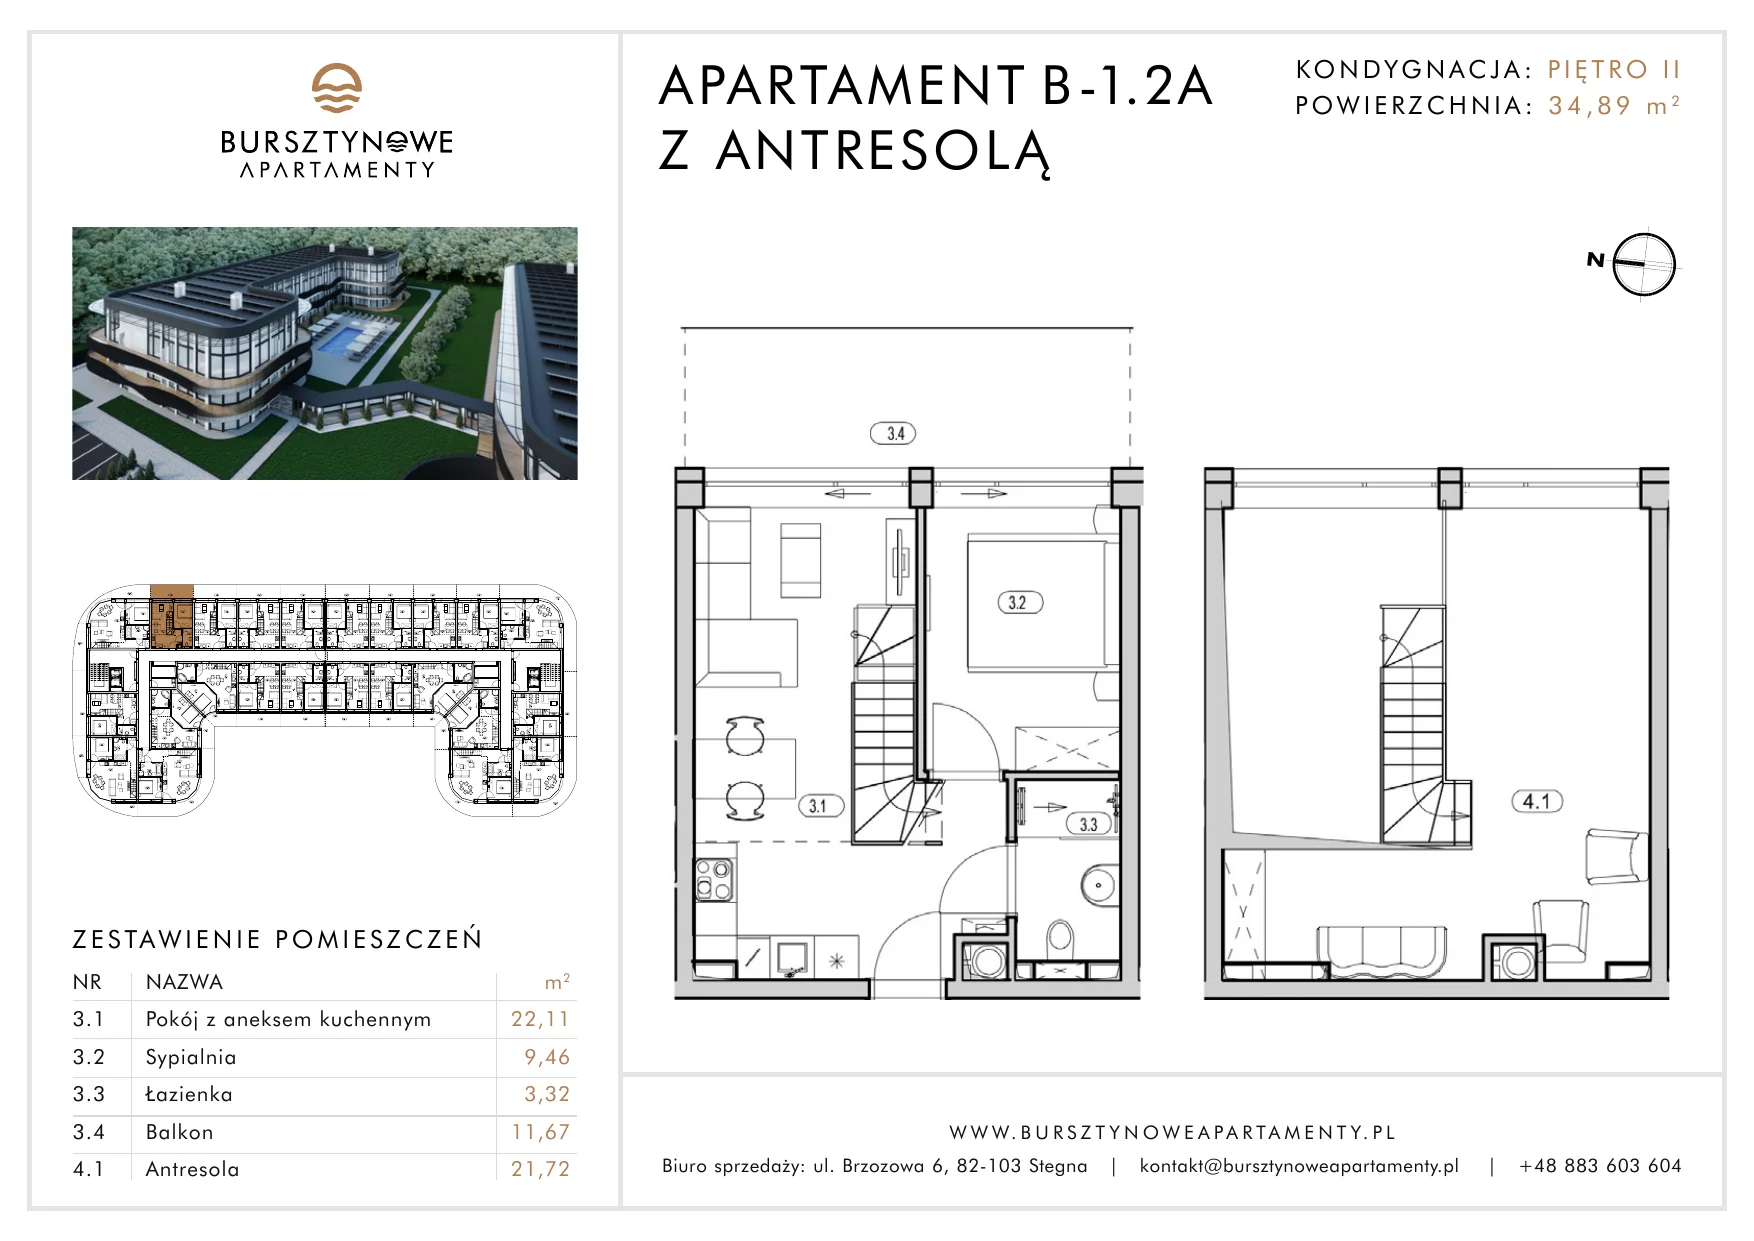 Apartament inwestycyjny 34,89 m², piętro 2, oferta nr B-1.2A, Bursztynowe Apartamenty, Stegna, ul. Brzozowa 6